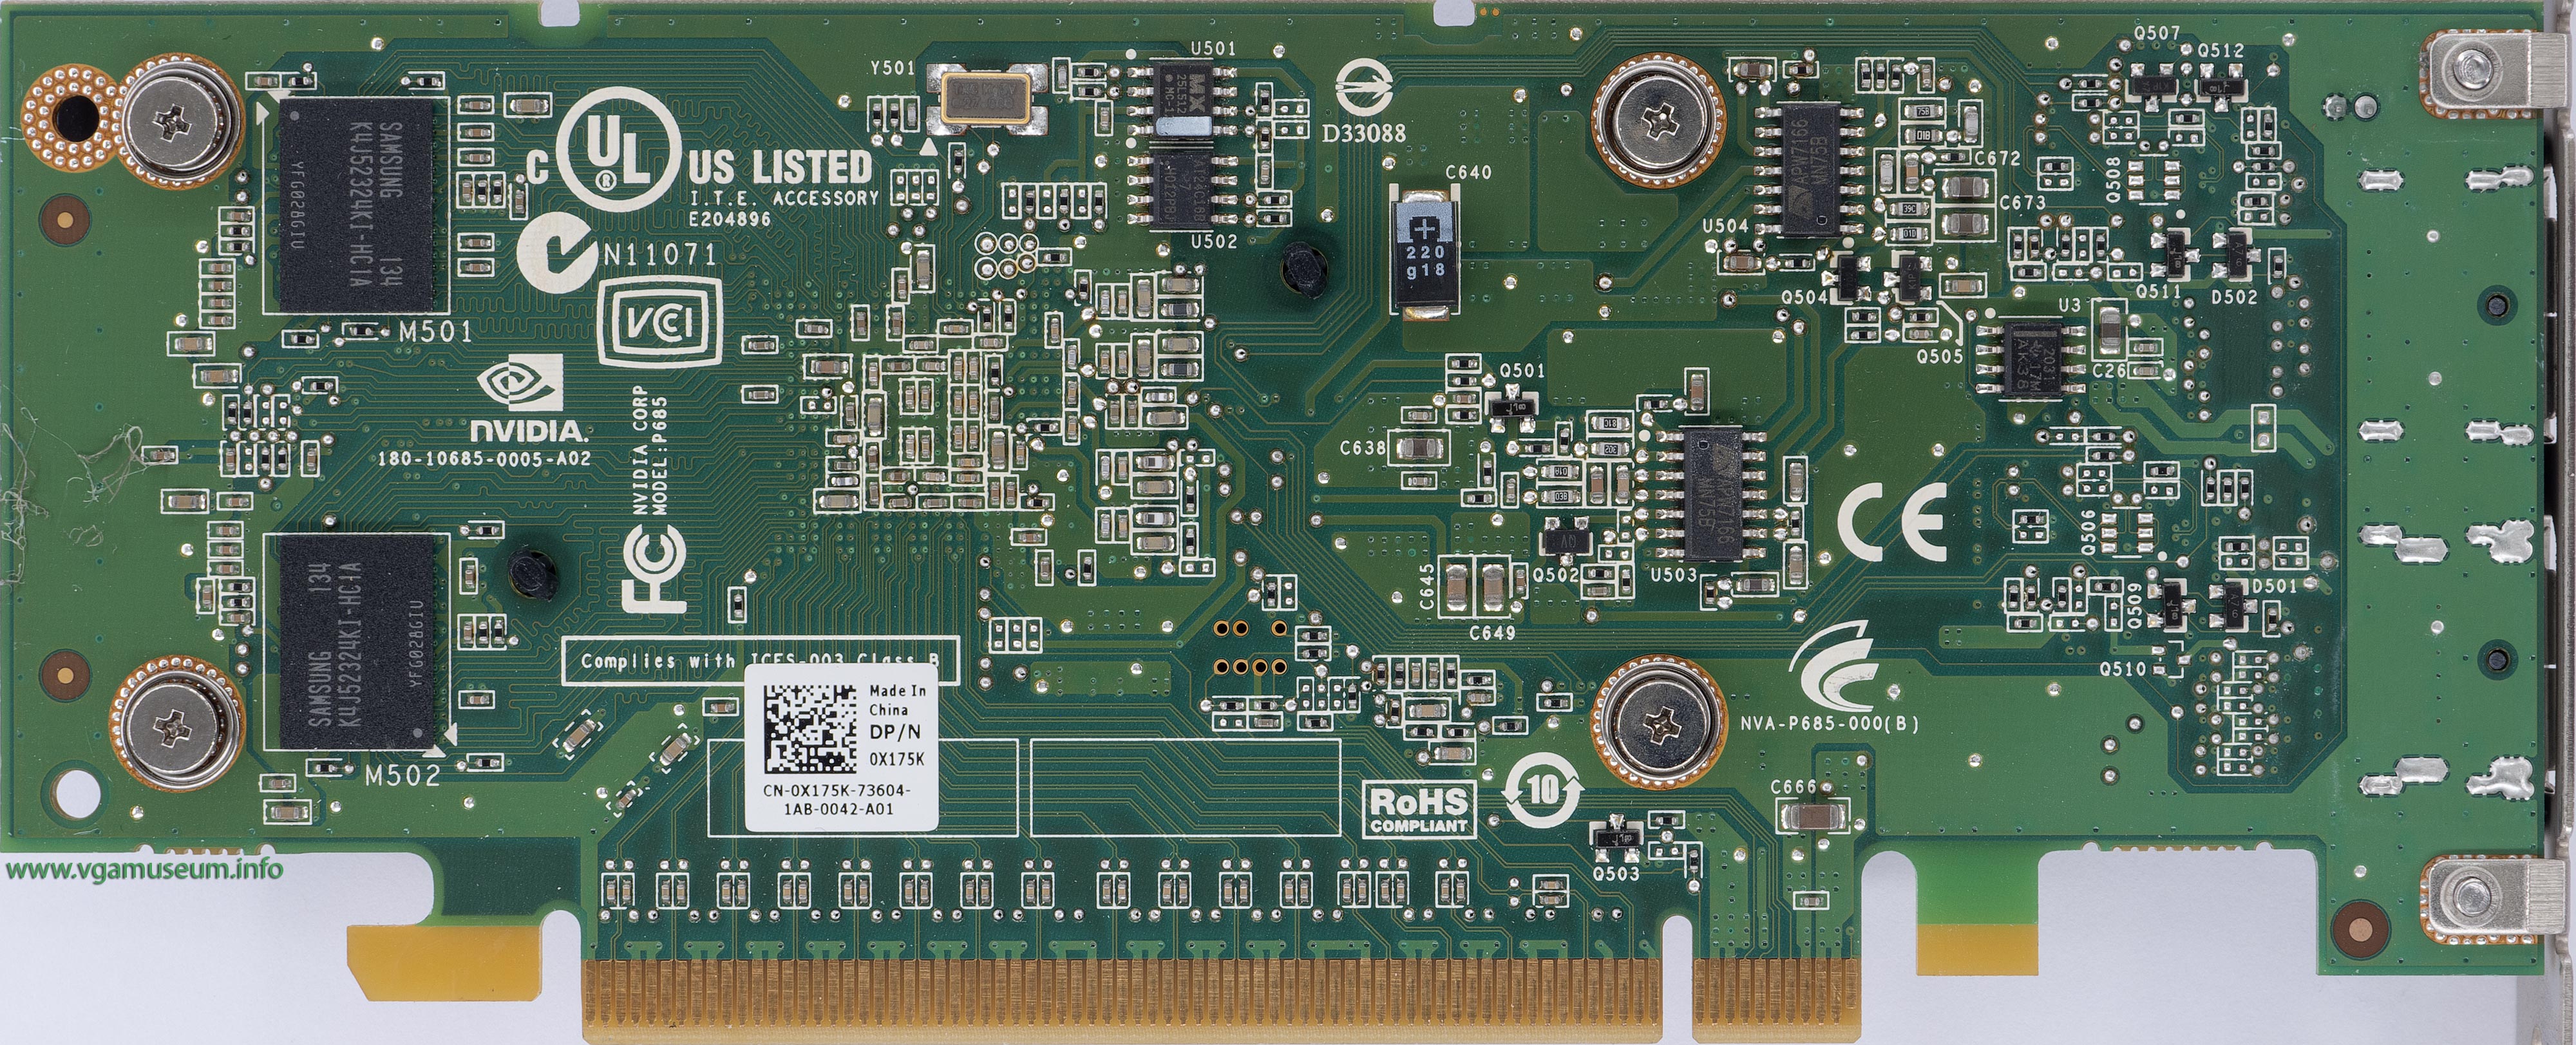 VGA Legacy MKIII - NVIDIA Quadro NVS 295